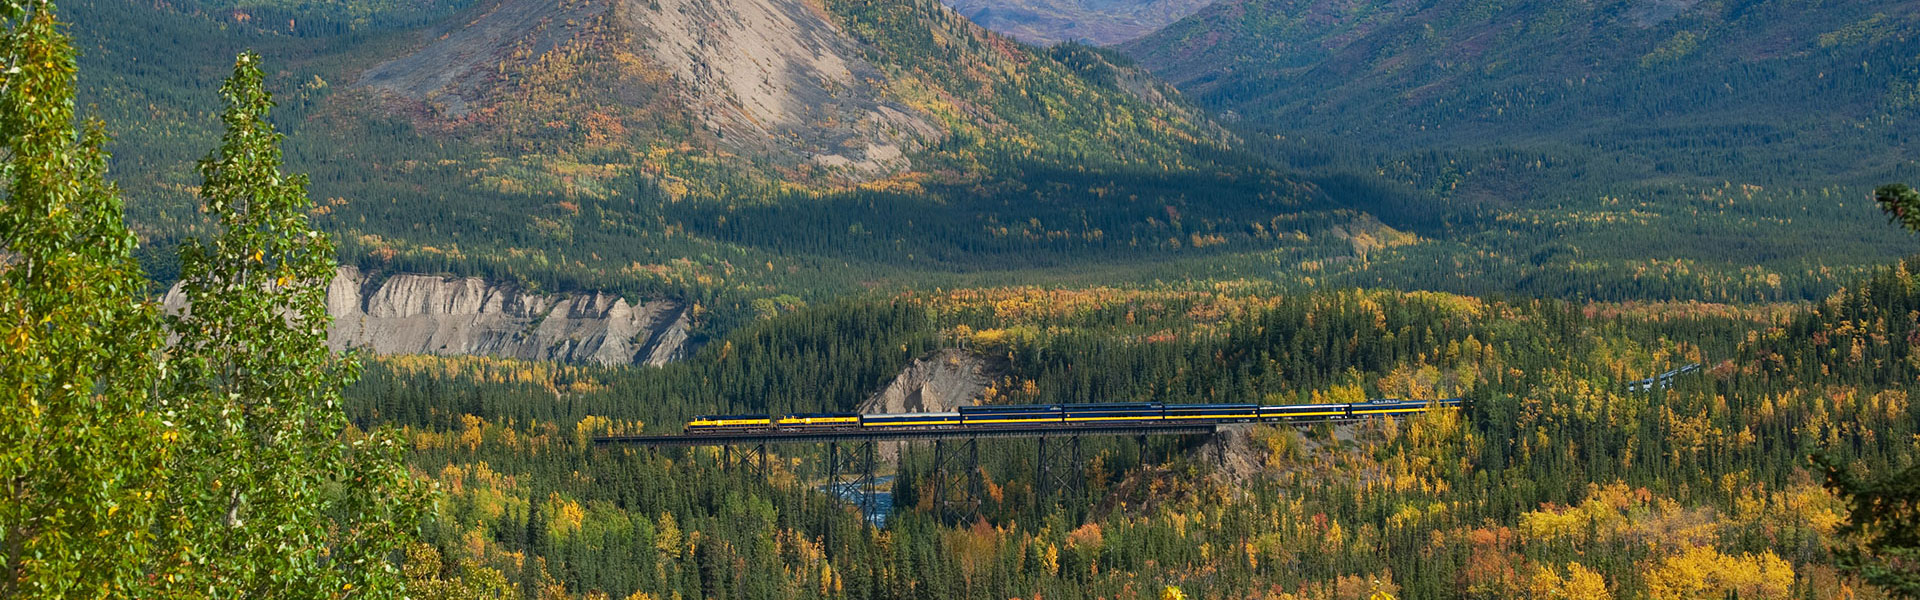 Alaska Train Trips | Best Alaska Train Tours